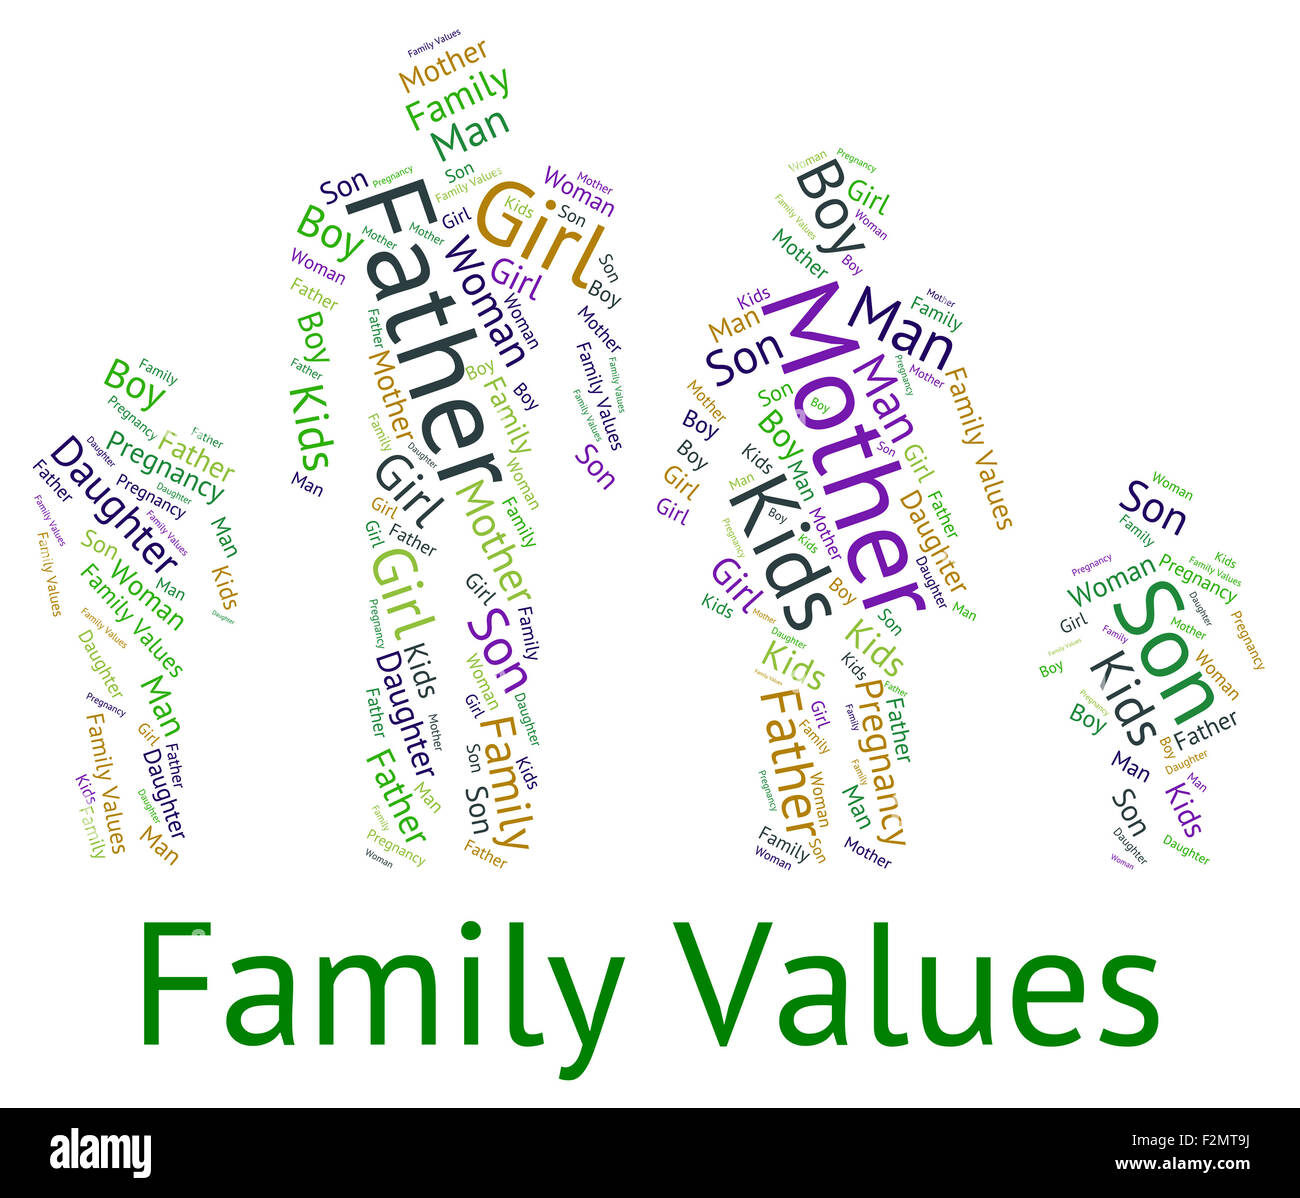 Values topic. The Family values. Family values topic. Family values топик. Family values ppt.